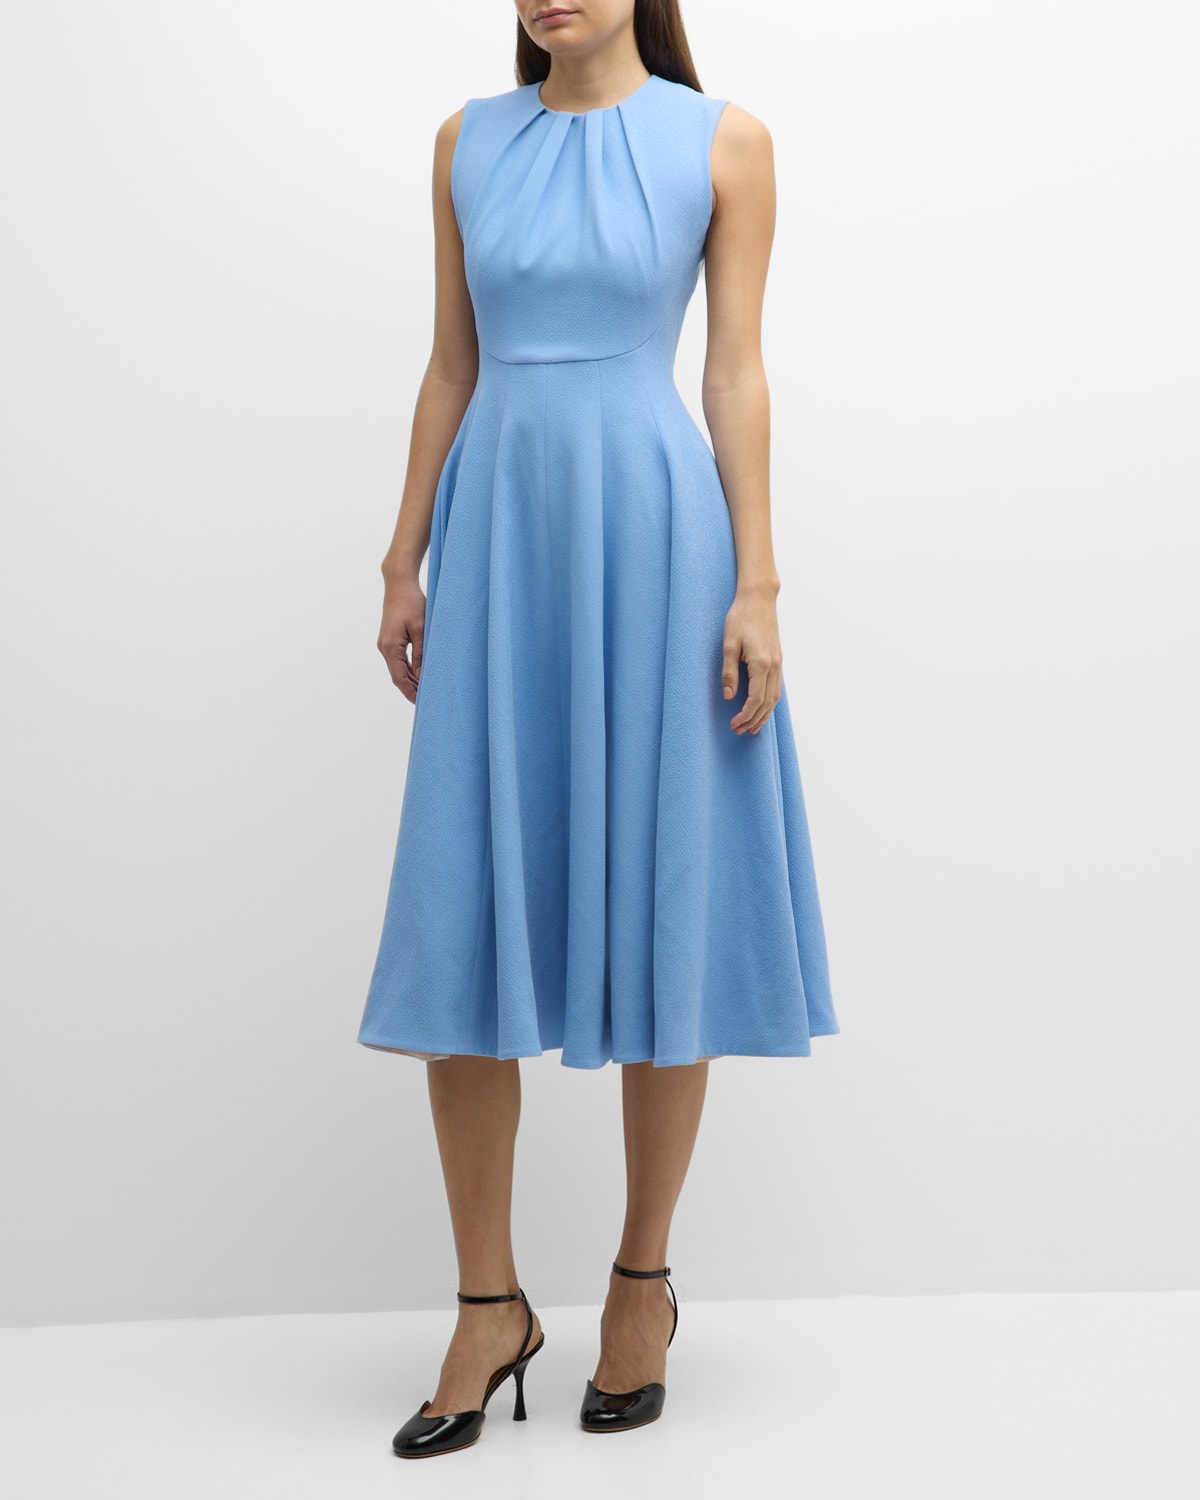 Emilia Wickstead Marlen Sleeveless Midi Dress In Celeste Blue